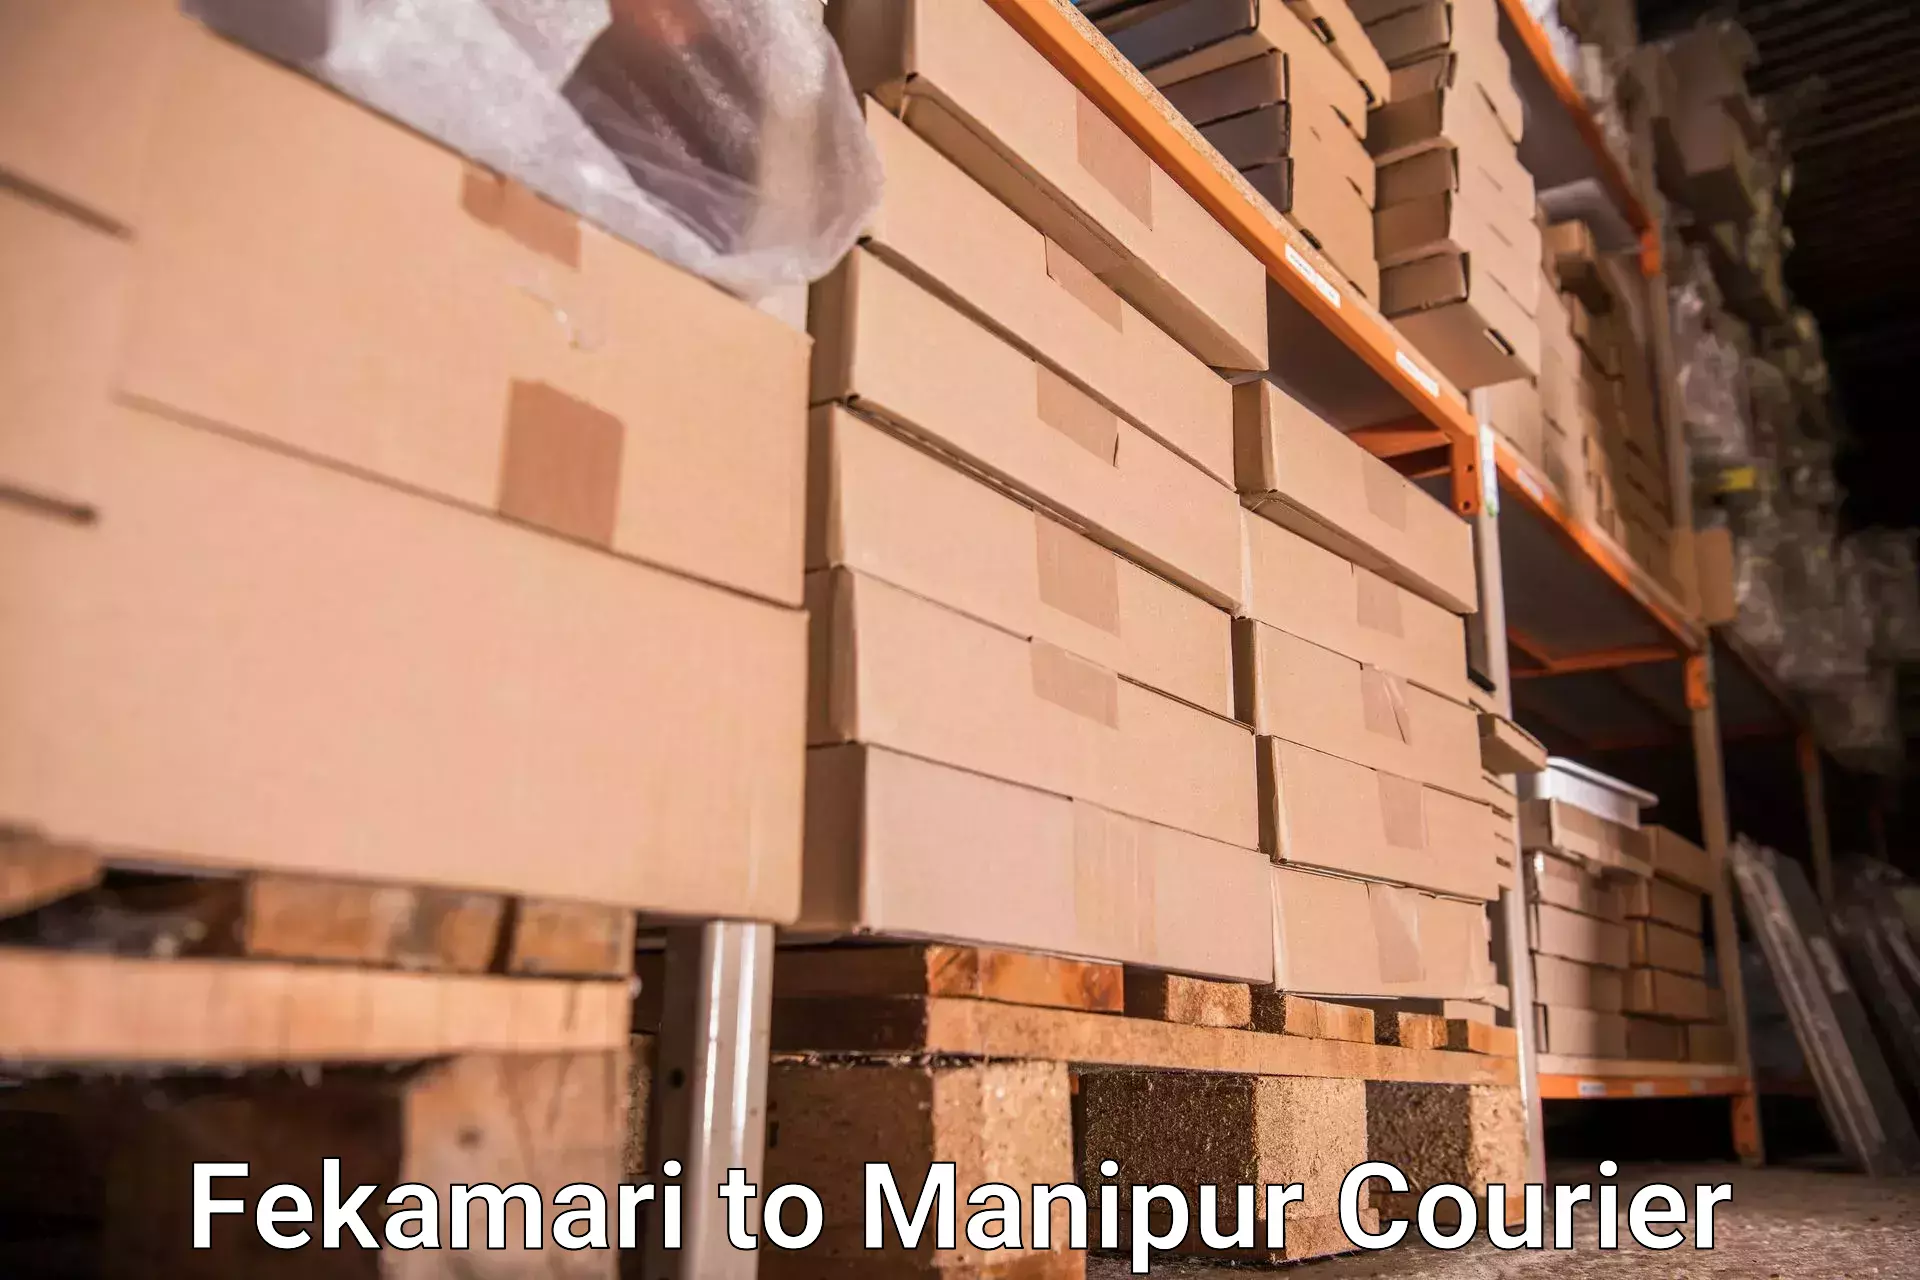 Baggage handling services Fekamari to Manipur